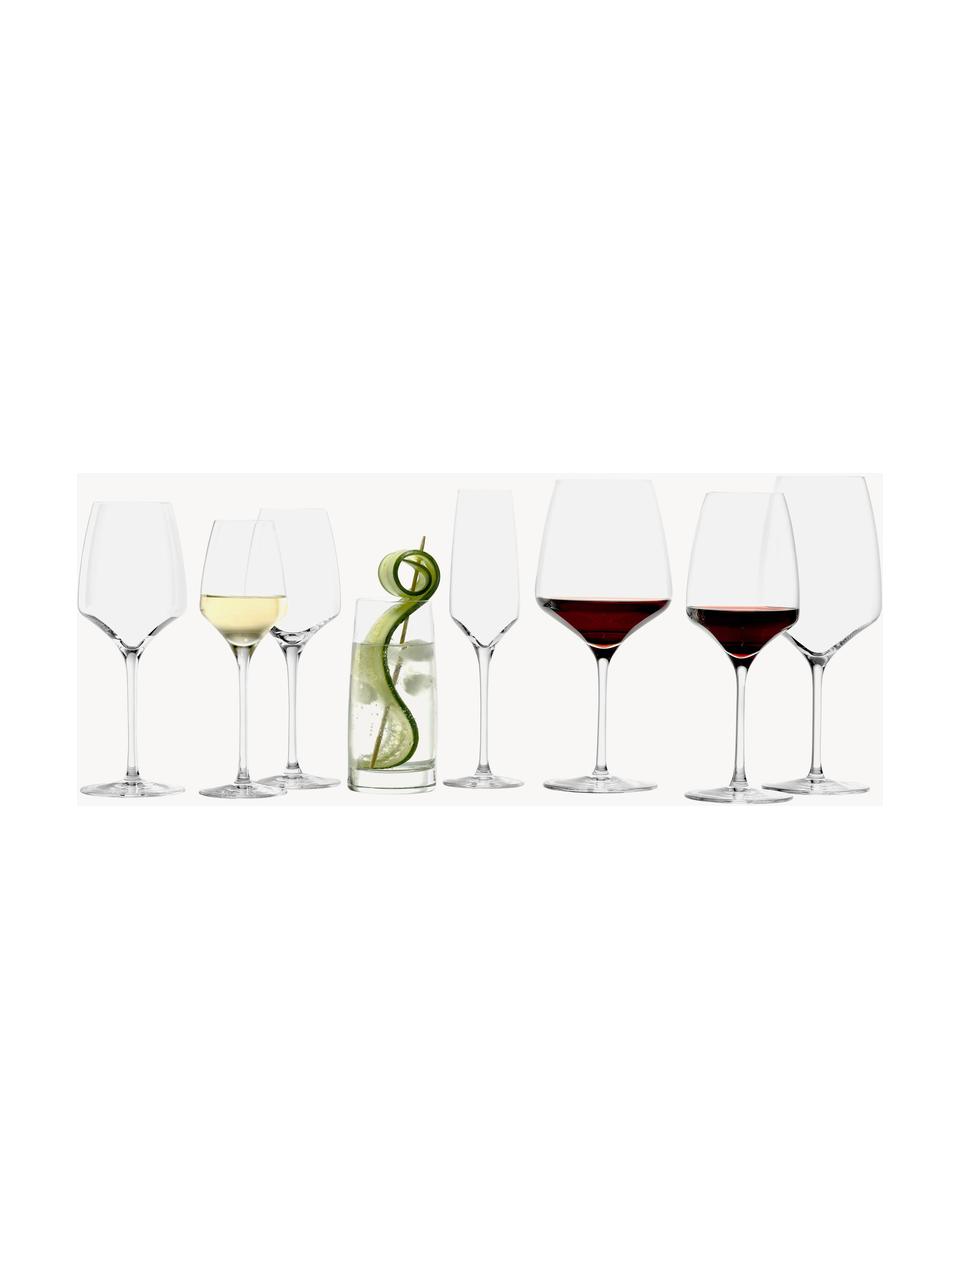 Krištáľové poháre na biele víno Experience, 6 ks, Krištáľové sklo

Vneste lesk krištáľového skla na váš jedálenský stôl! Sklo je výnimočne priehľadné a ťažké, čo znamená, že pôsobí hodnotne a zároveň dobre vyzerá. Navyše jemné tvary robia z každého kusu špeciálny kúsok, ktorý je praktický aj krásny., Priehľadná, Ø 8 x V 21 cm, 350 ml